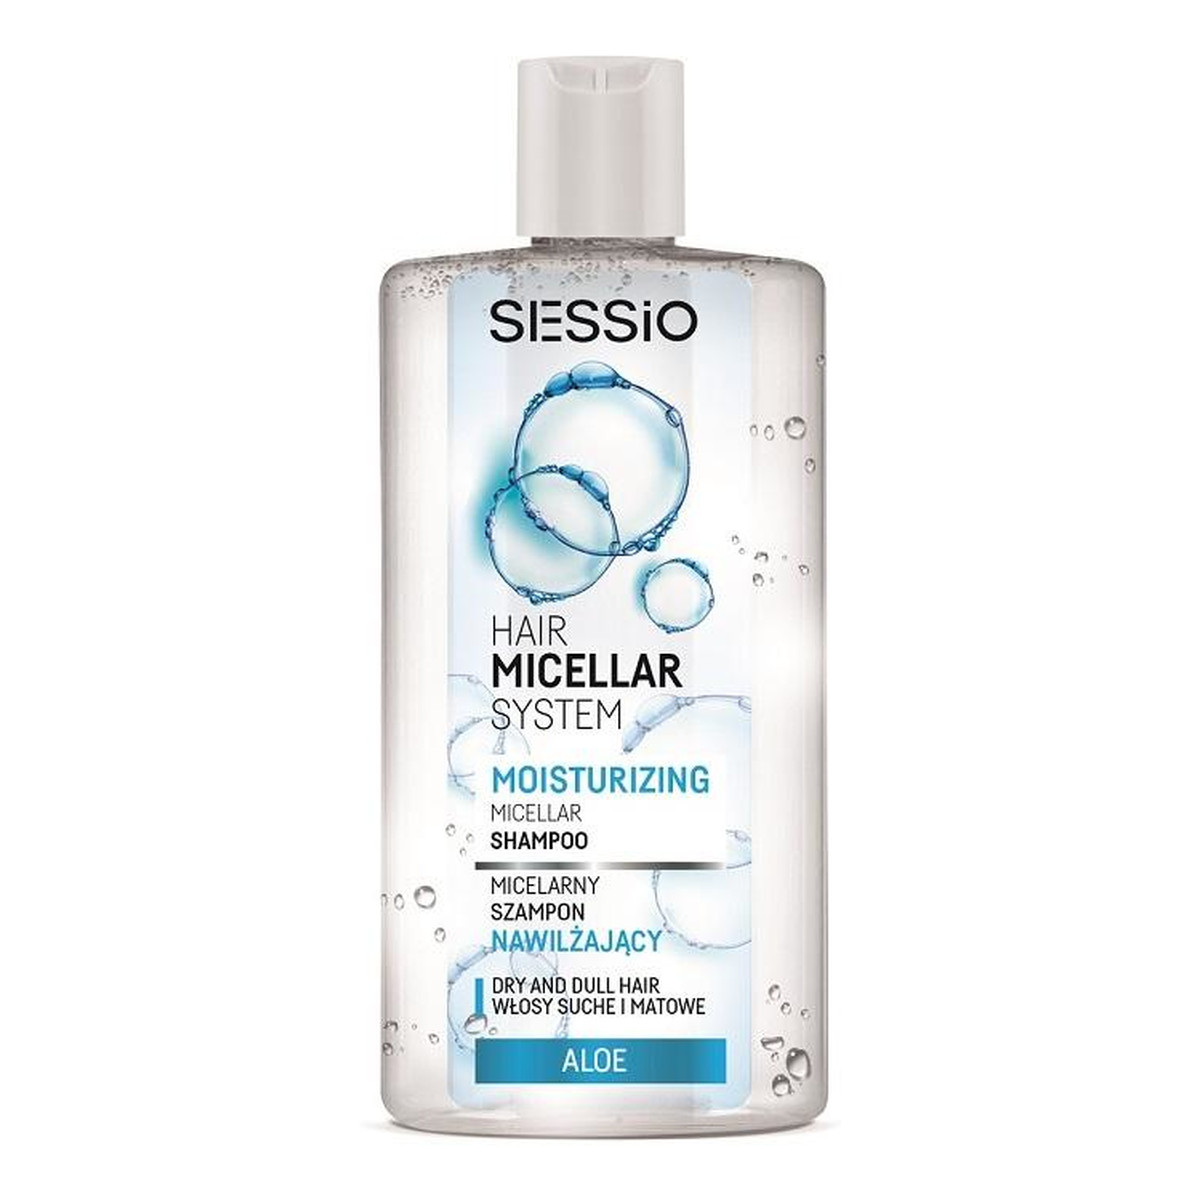 Sessio Hair Micellar System Moisturizing micelarny szampon nawilżający do włosów suchych i matowych Aloe 300g